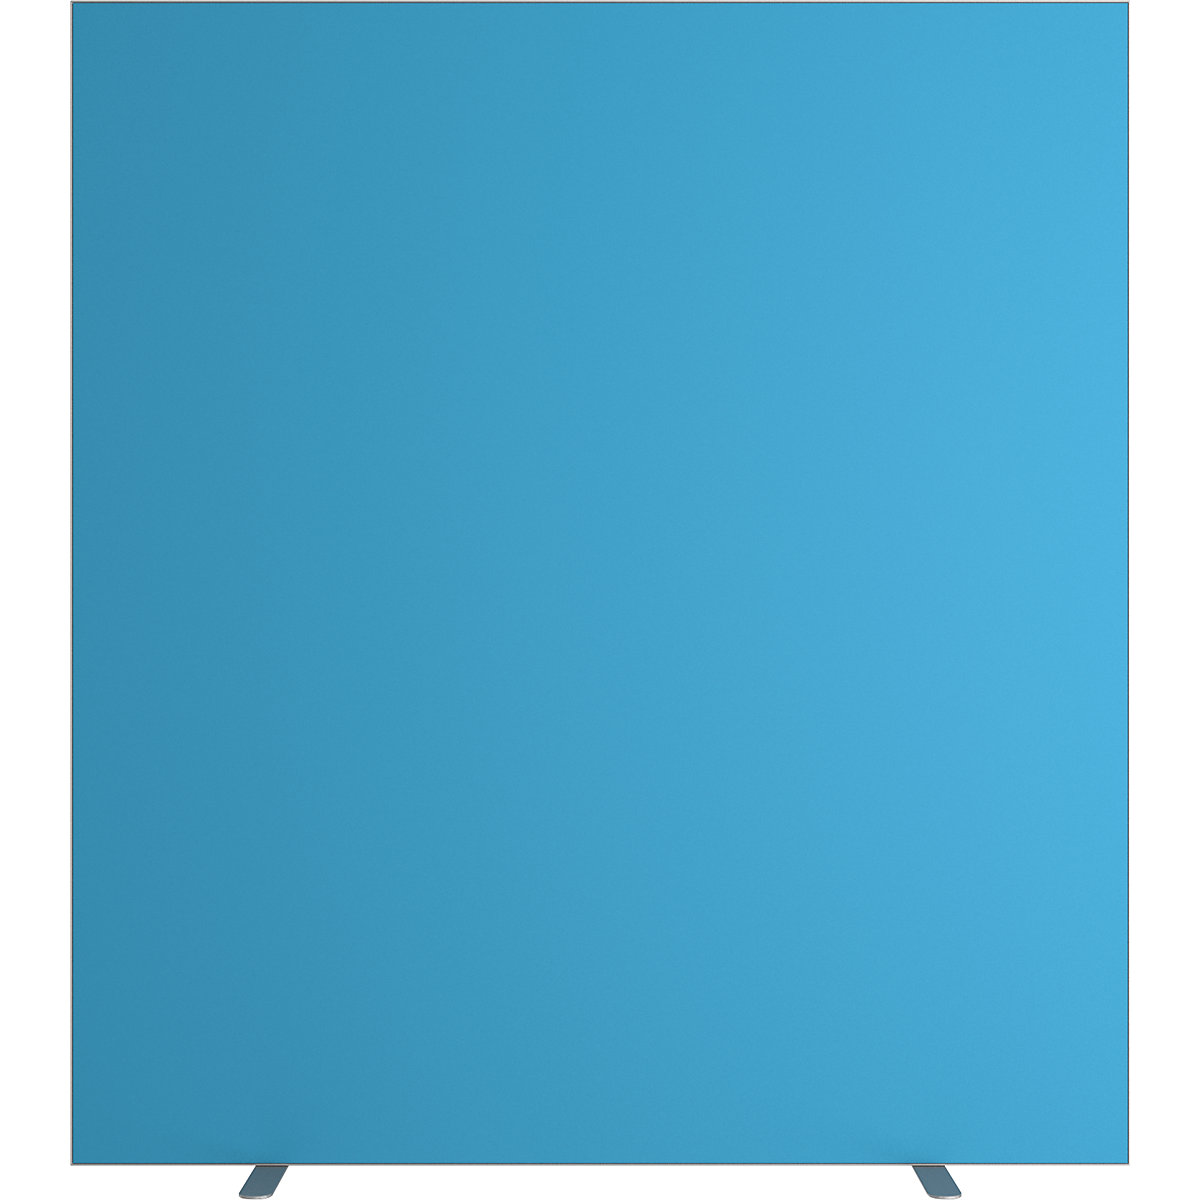 Pared separadora easyScreen, monocolor, azul, anchura 1600 mm-6